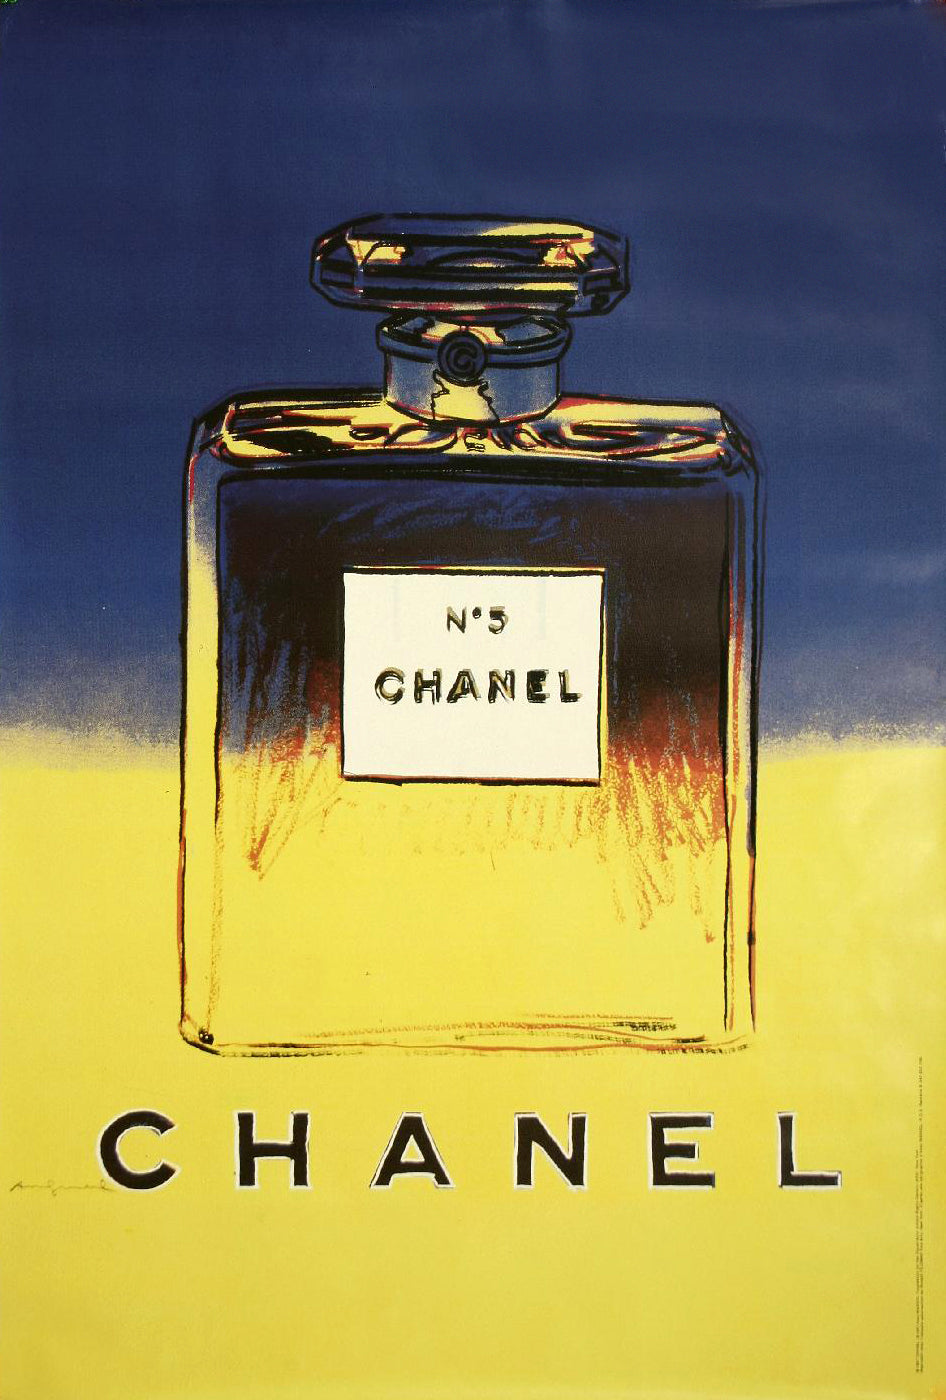 Affiche Vintage Parfum Chanel N°5 Andy Warhol (Version Jaune & Bleu)